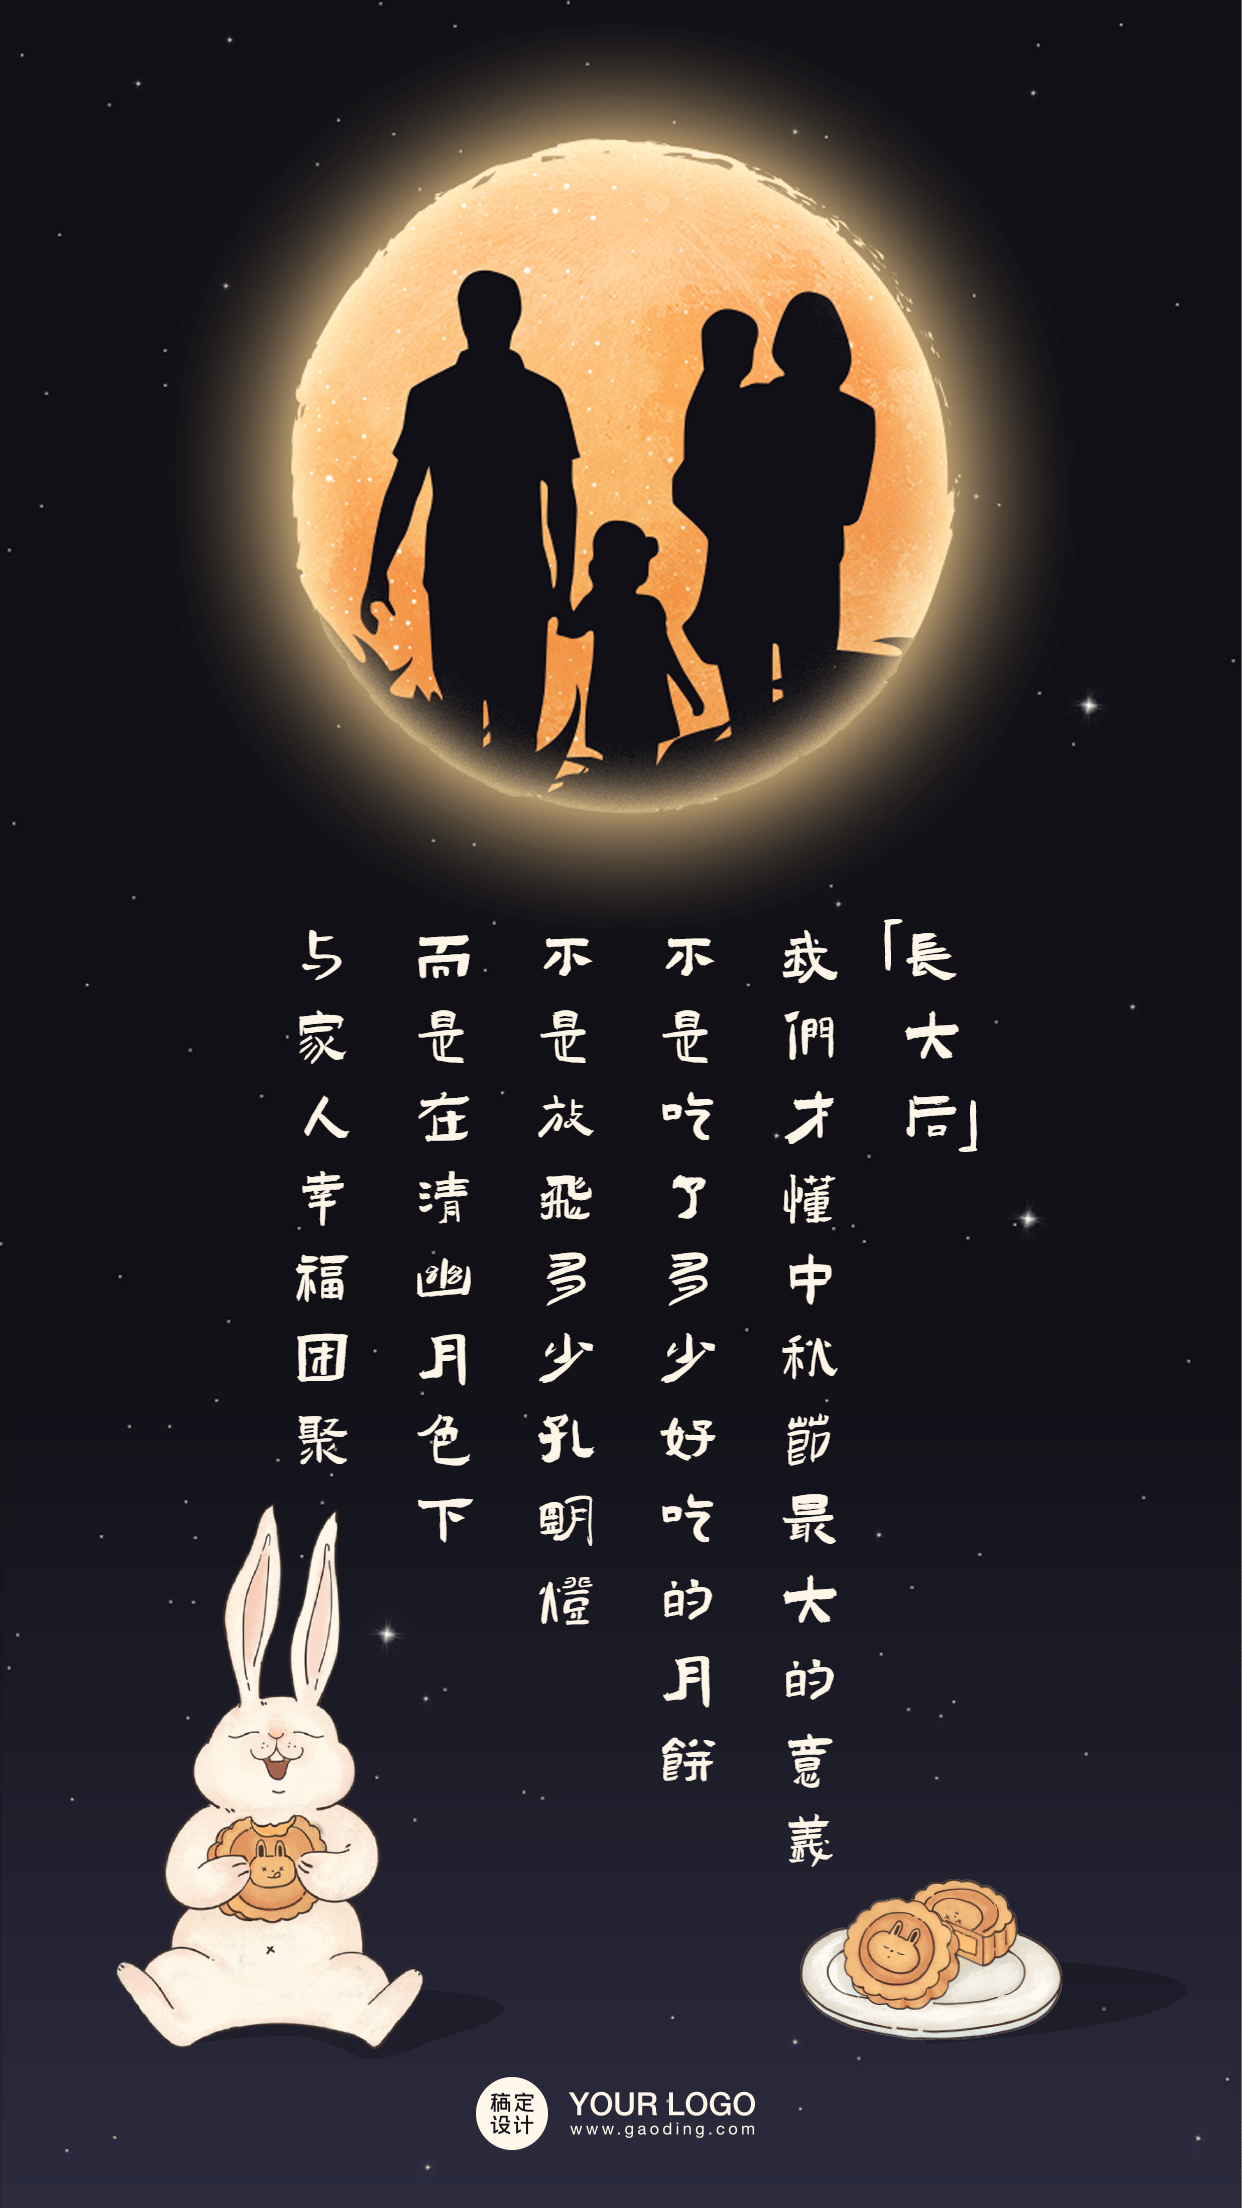 中秋节印象记忆月亮满月回顾一家人预览效果